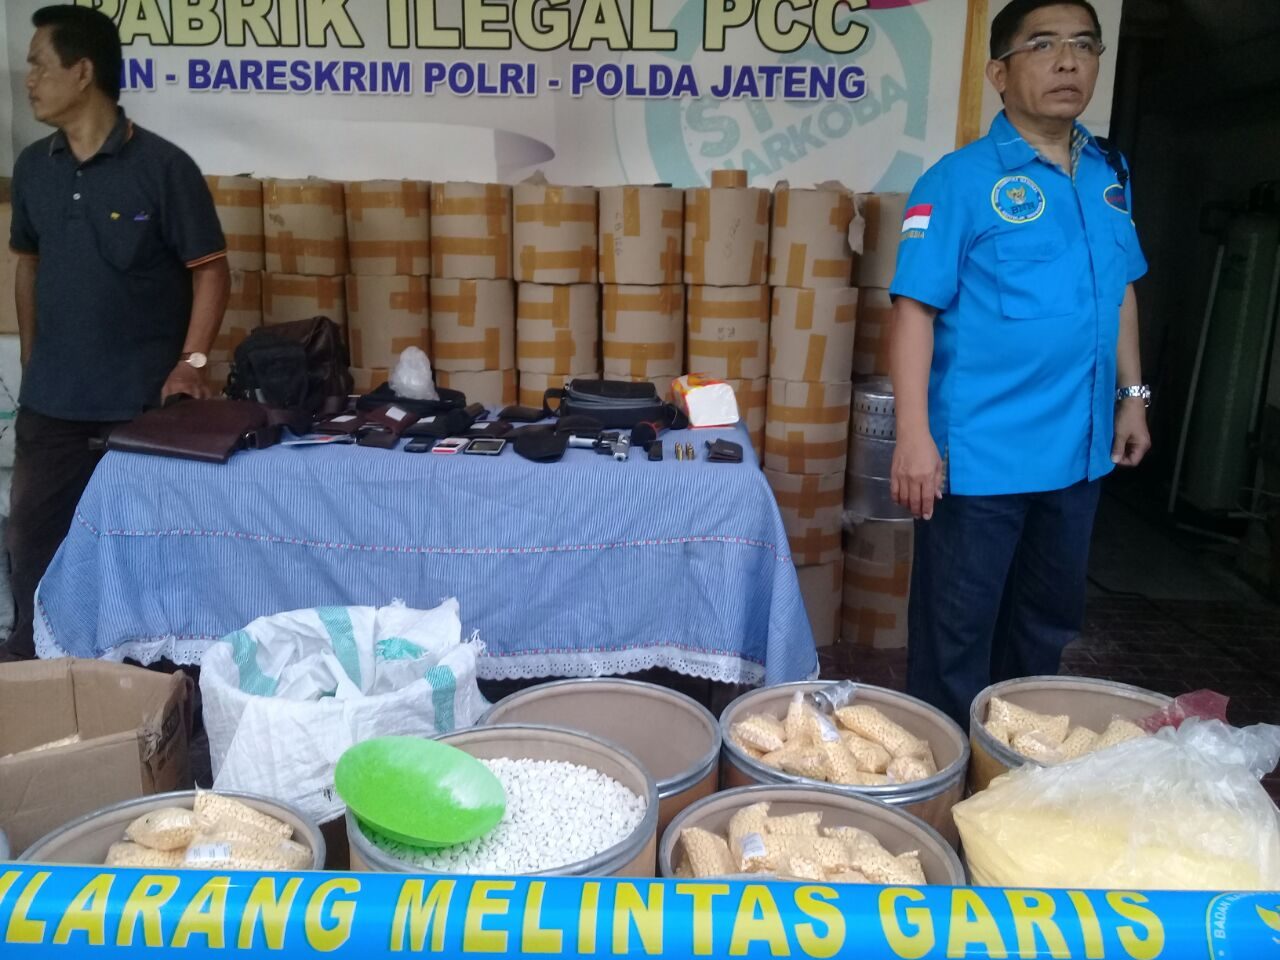 Gerebek rumah mewah di Semarang, polisi temukan 13 juta butir pil PCC